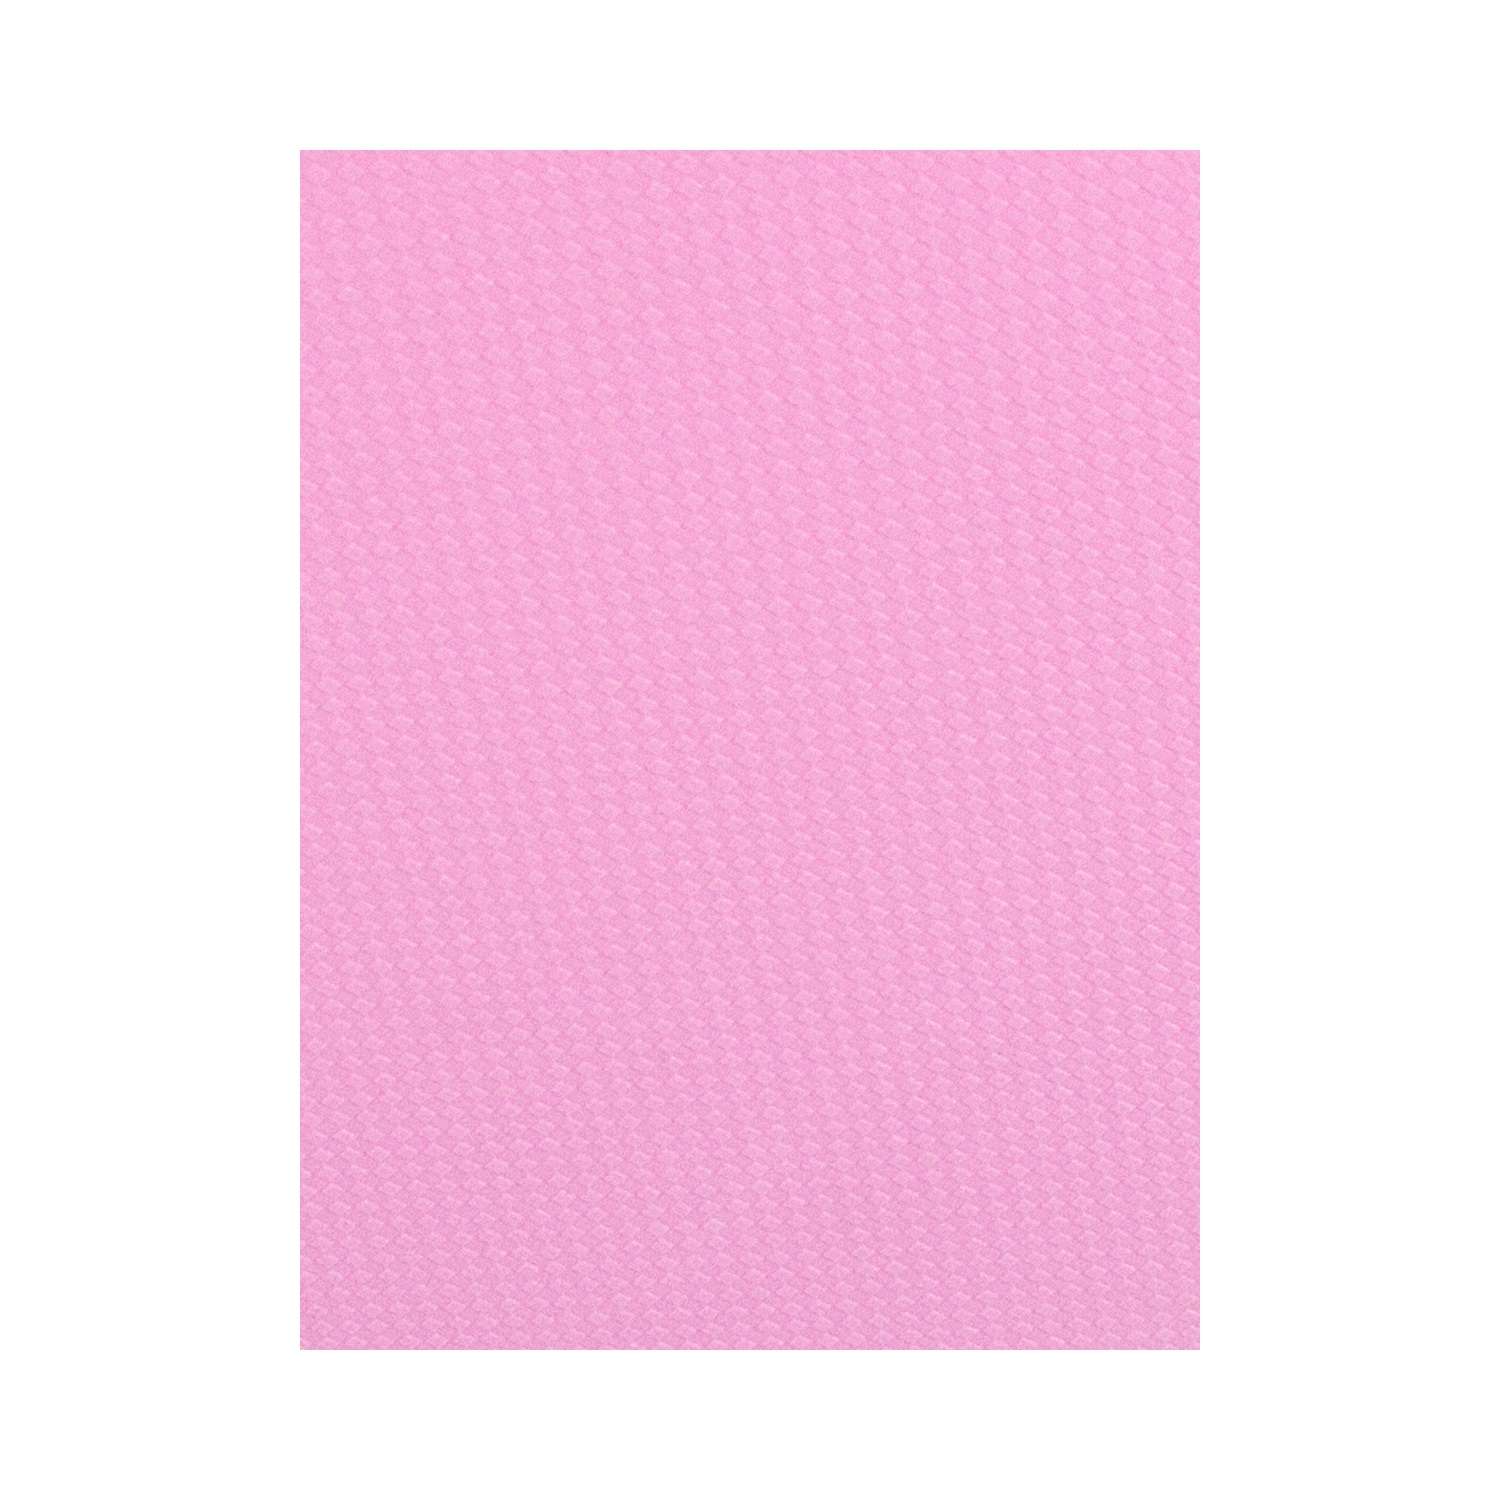 Развивающий детский коврик Eco cover игровой для ползания мягкий пол розовый 33х33 - фото 3